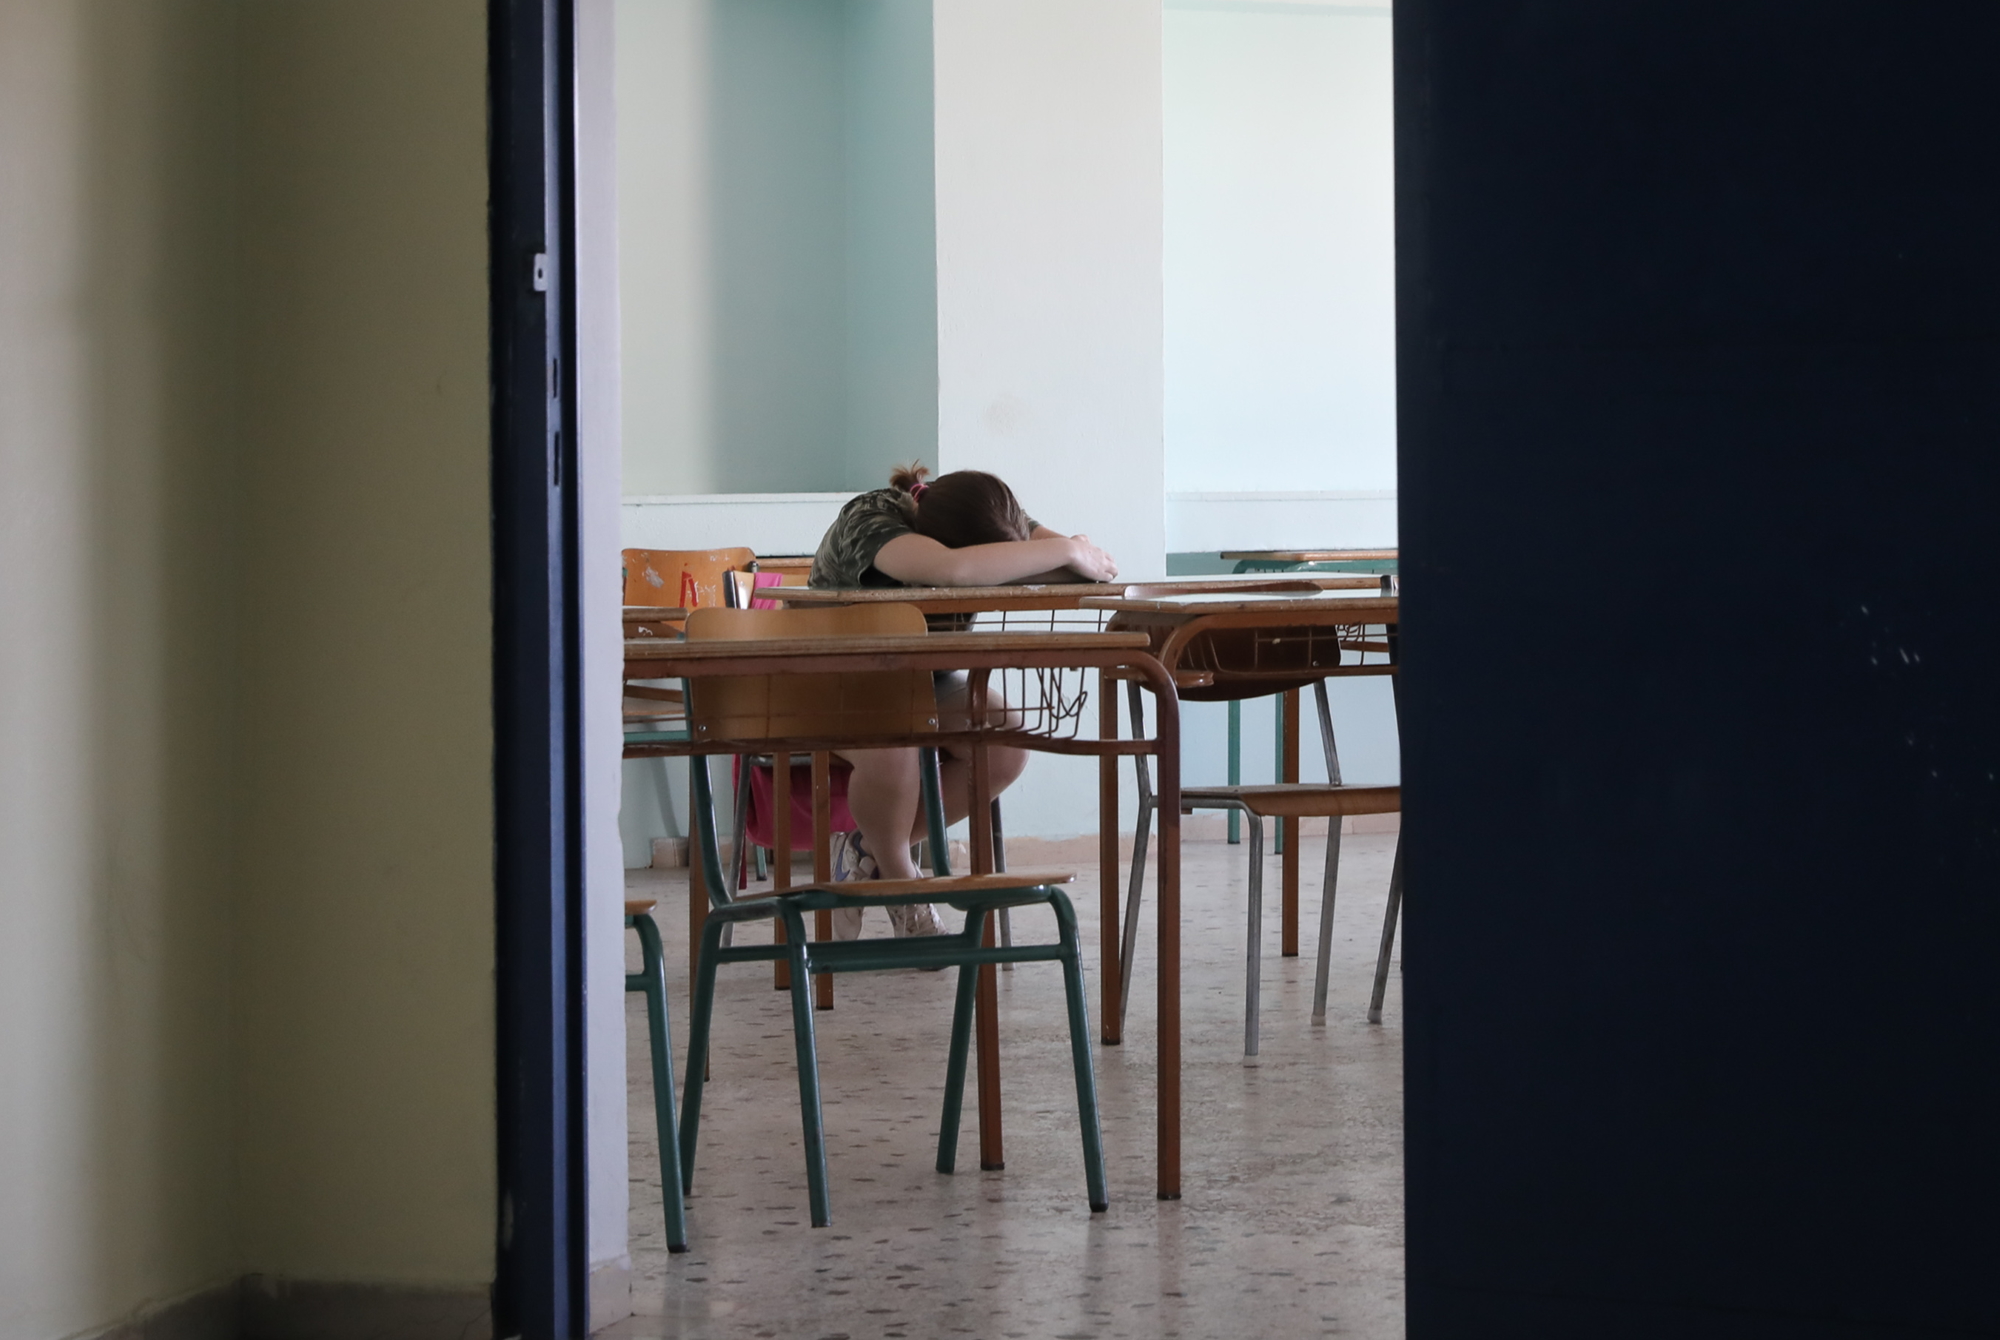 Θεσσαλονίκη: Άγριο bullying σε μαθήτρια γυμνασίου – Την ξυλοκόπησαν και ανέβασαν βίντεο στο TikTok